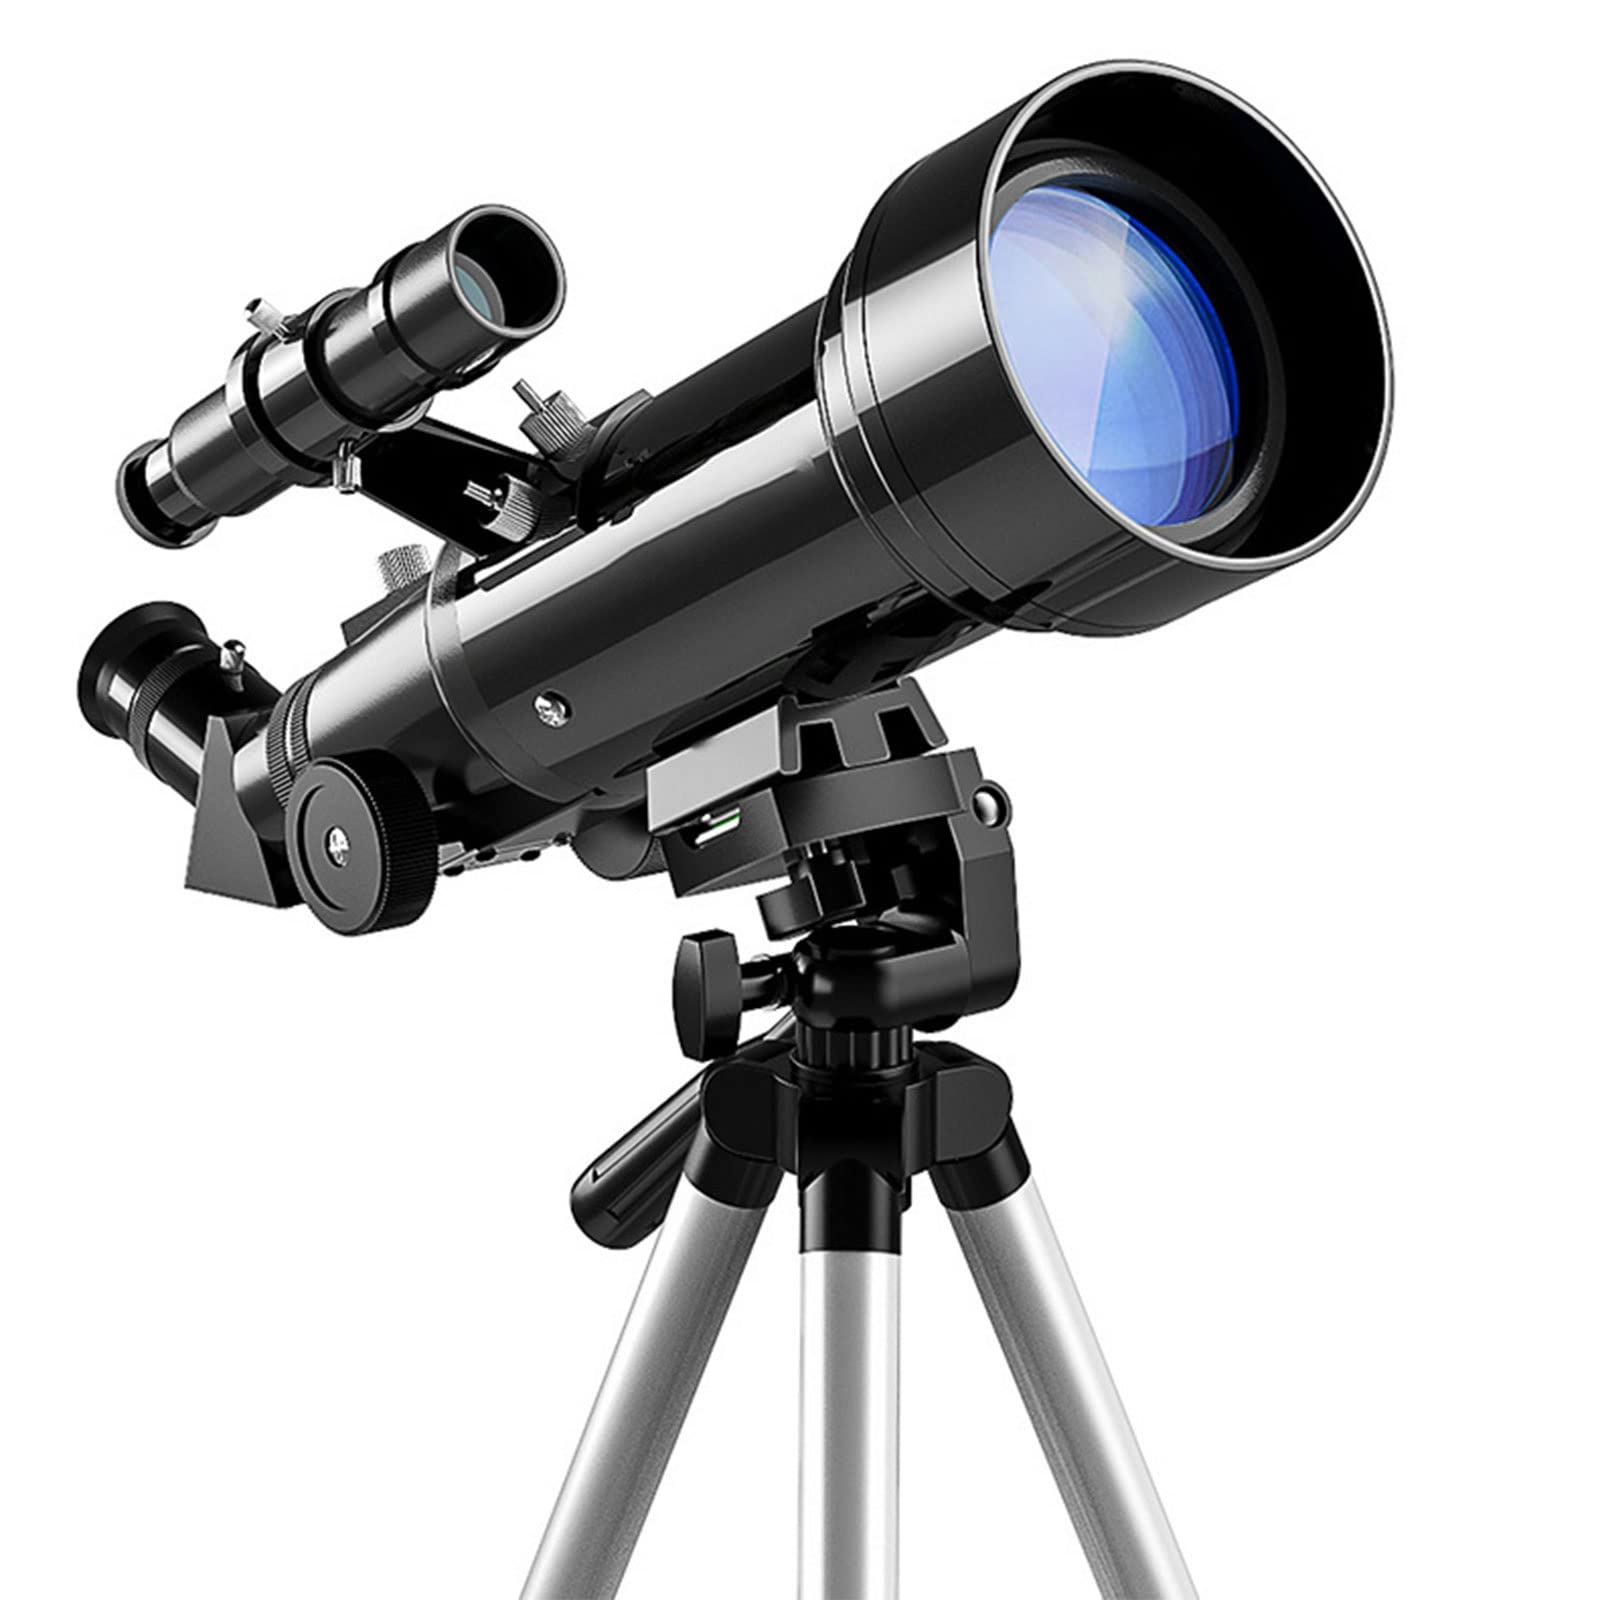 Teleskop für Astronomie, 70 mm Apertur, 400 mm Refraktor-Teleskope, mit verstellbarem Stativ für Kinder, Erwachsene, Anfänger Full Moon